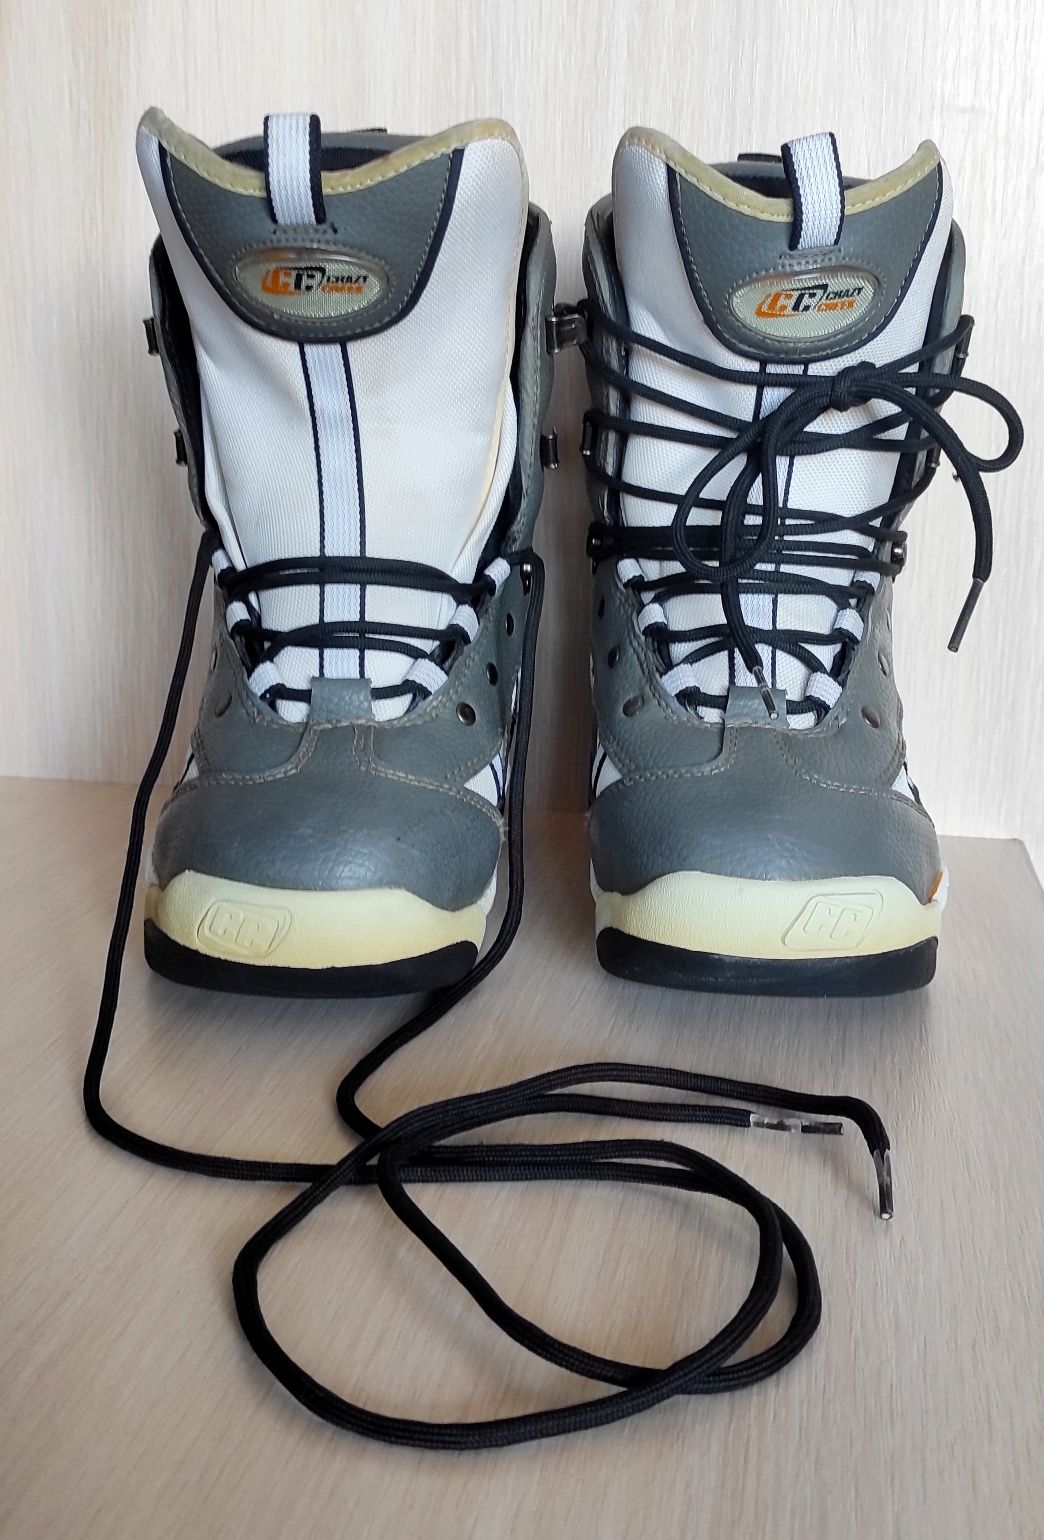 Ботинки для сноубординга crazy creek / сноубордические ботинки